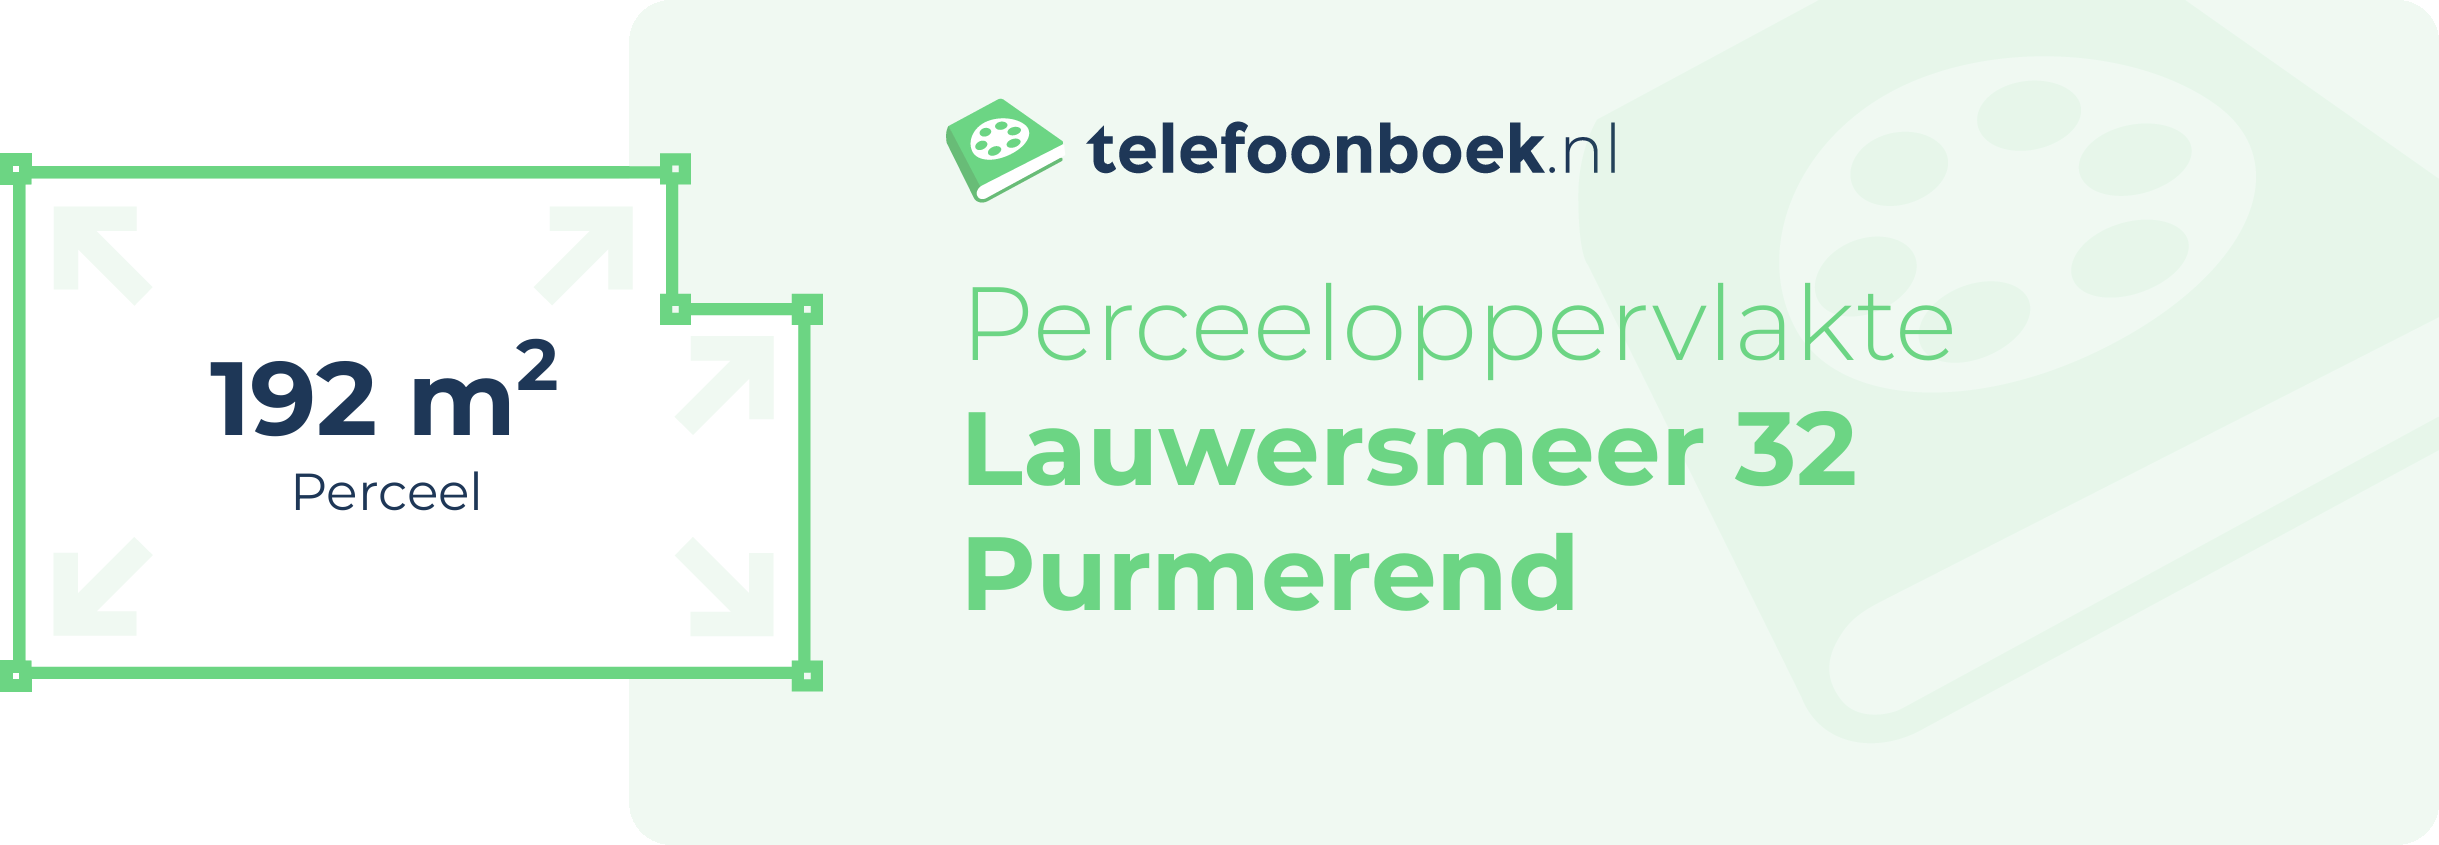 Perceeloppervlakte Lauwersmeer 32 Purmerend